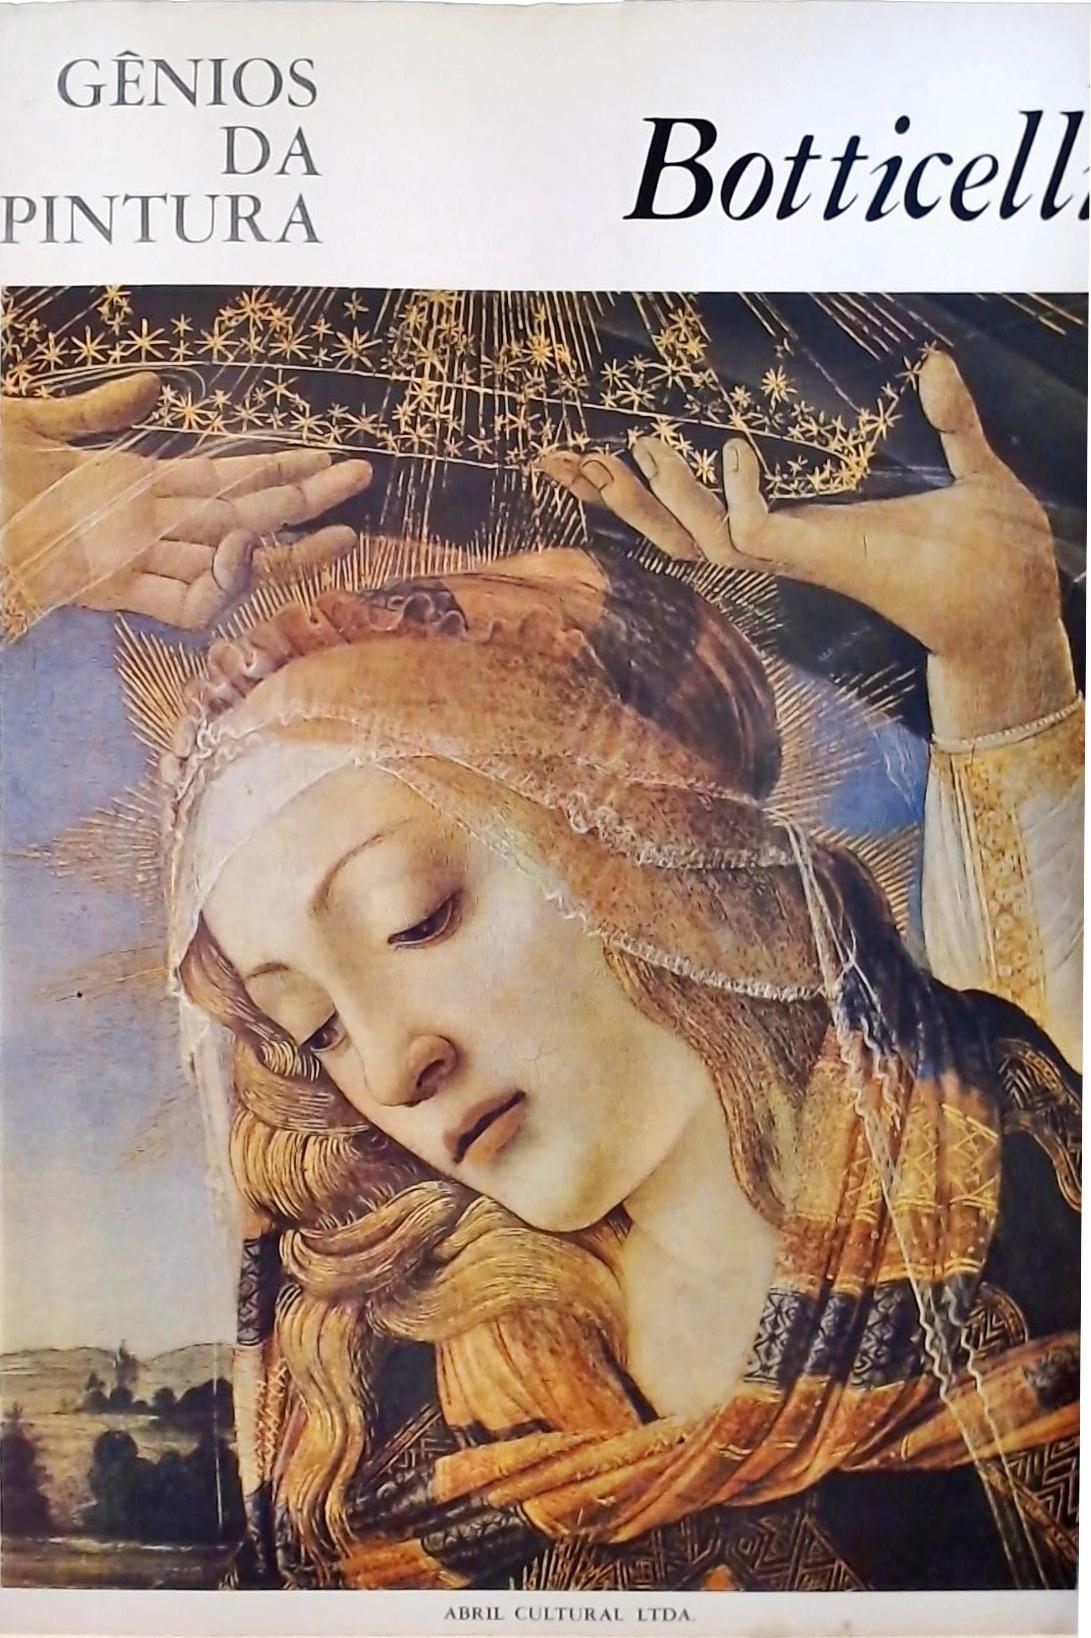 Gênios da Pintura - Botticelli